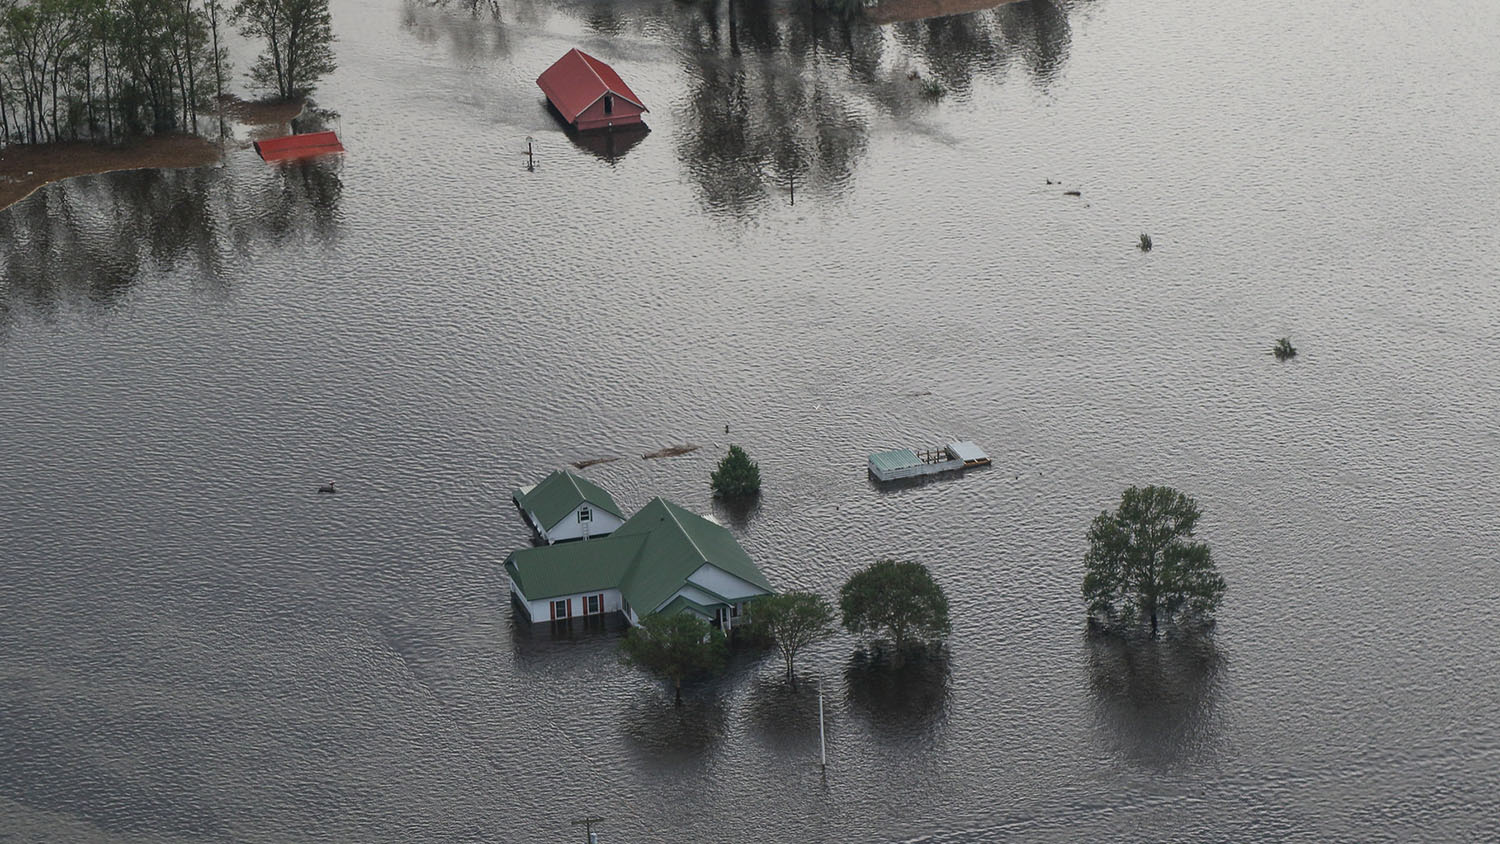 从空中俯瞰洪水中的农舍、车辆和附属建筑。所有的结构都被淹没了，只有屋顶暴露在外